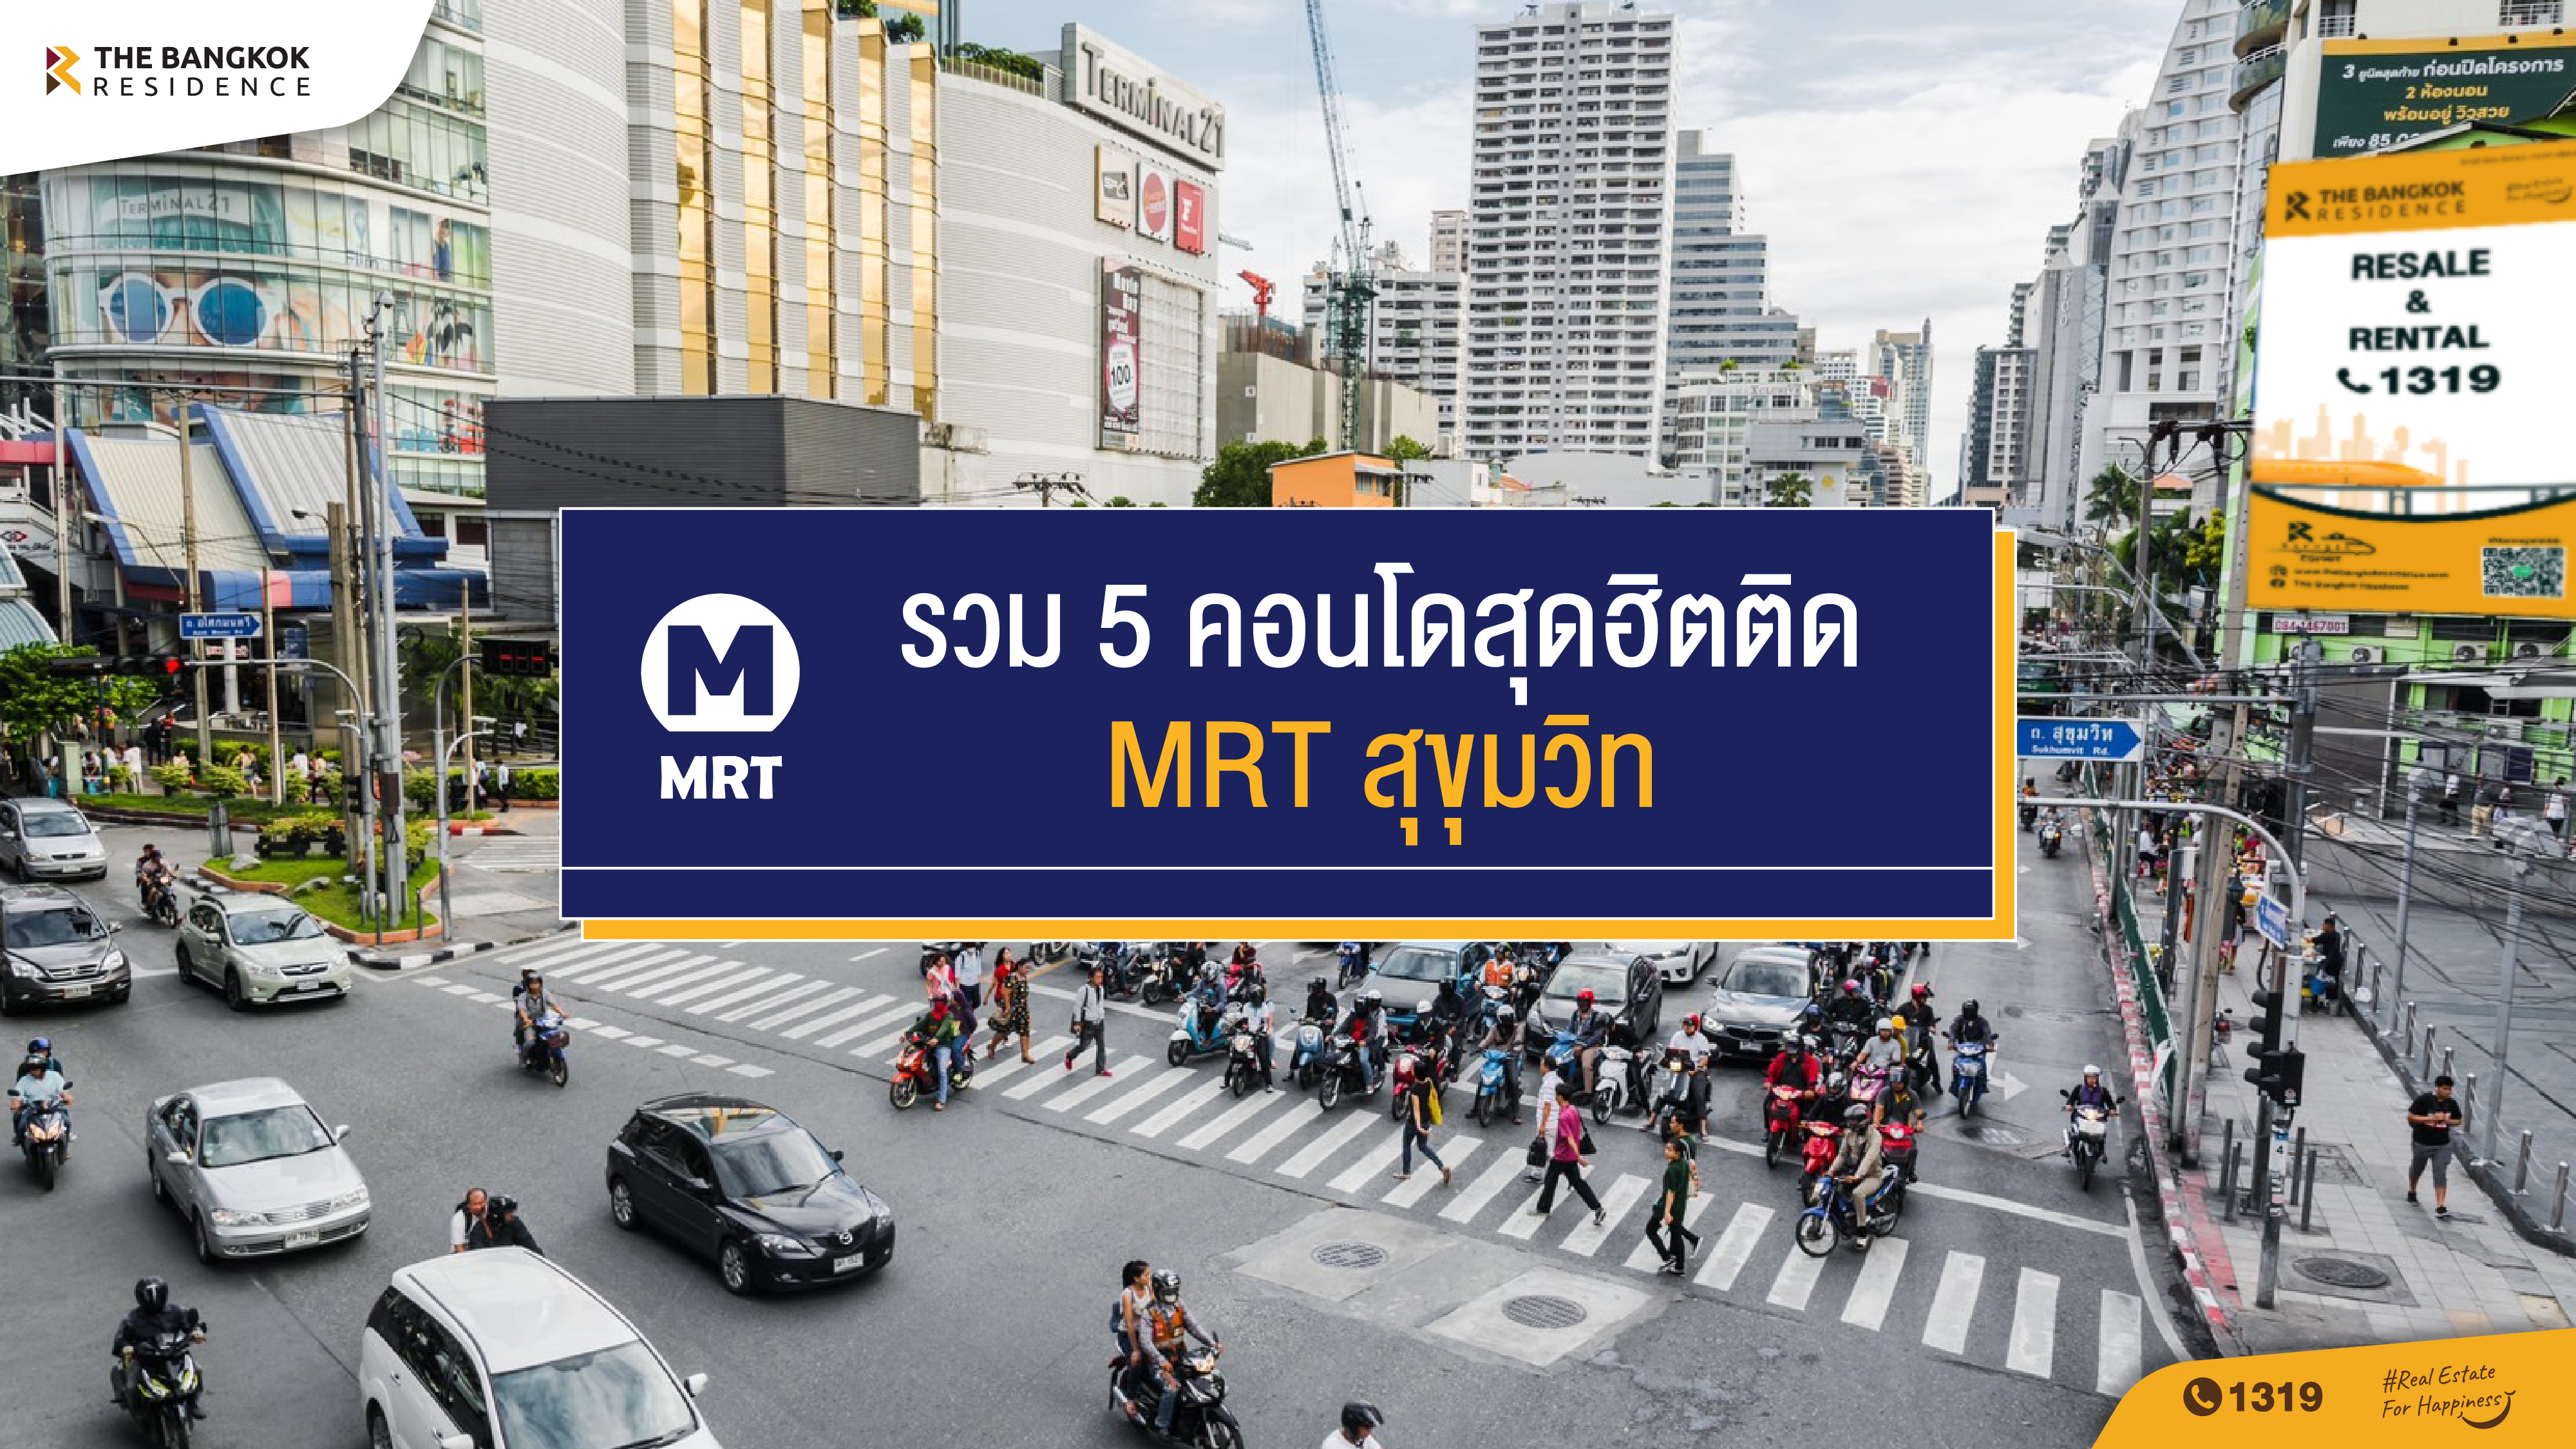 รวม 5 คอนโดสุดฮิตติด MRT สุขุมวิท หากใช้ชีวิตในเมืองต้องการความรวดเร็วในการเดินทาง ดังนั้นการเลือกอยู่คอนโดฯ 